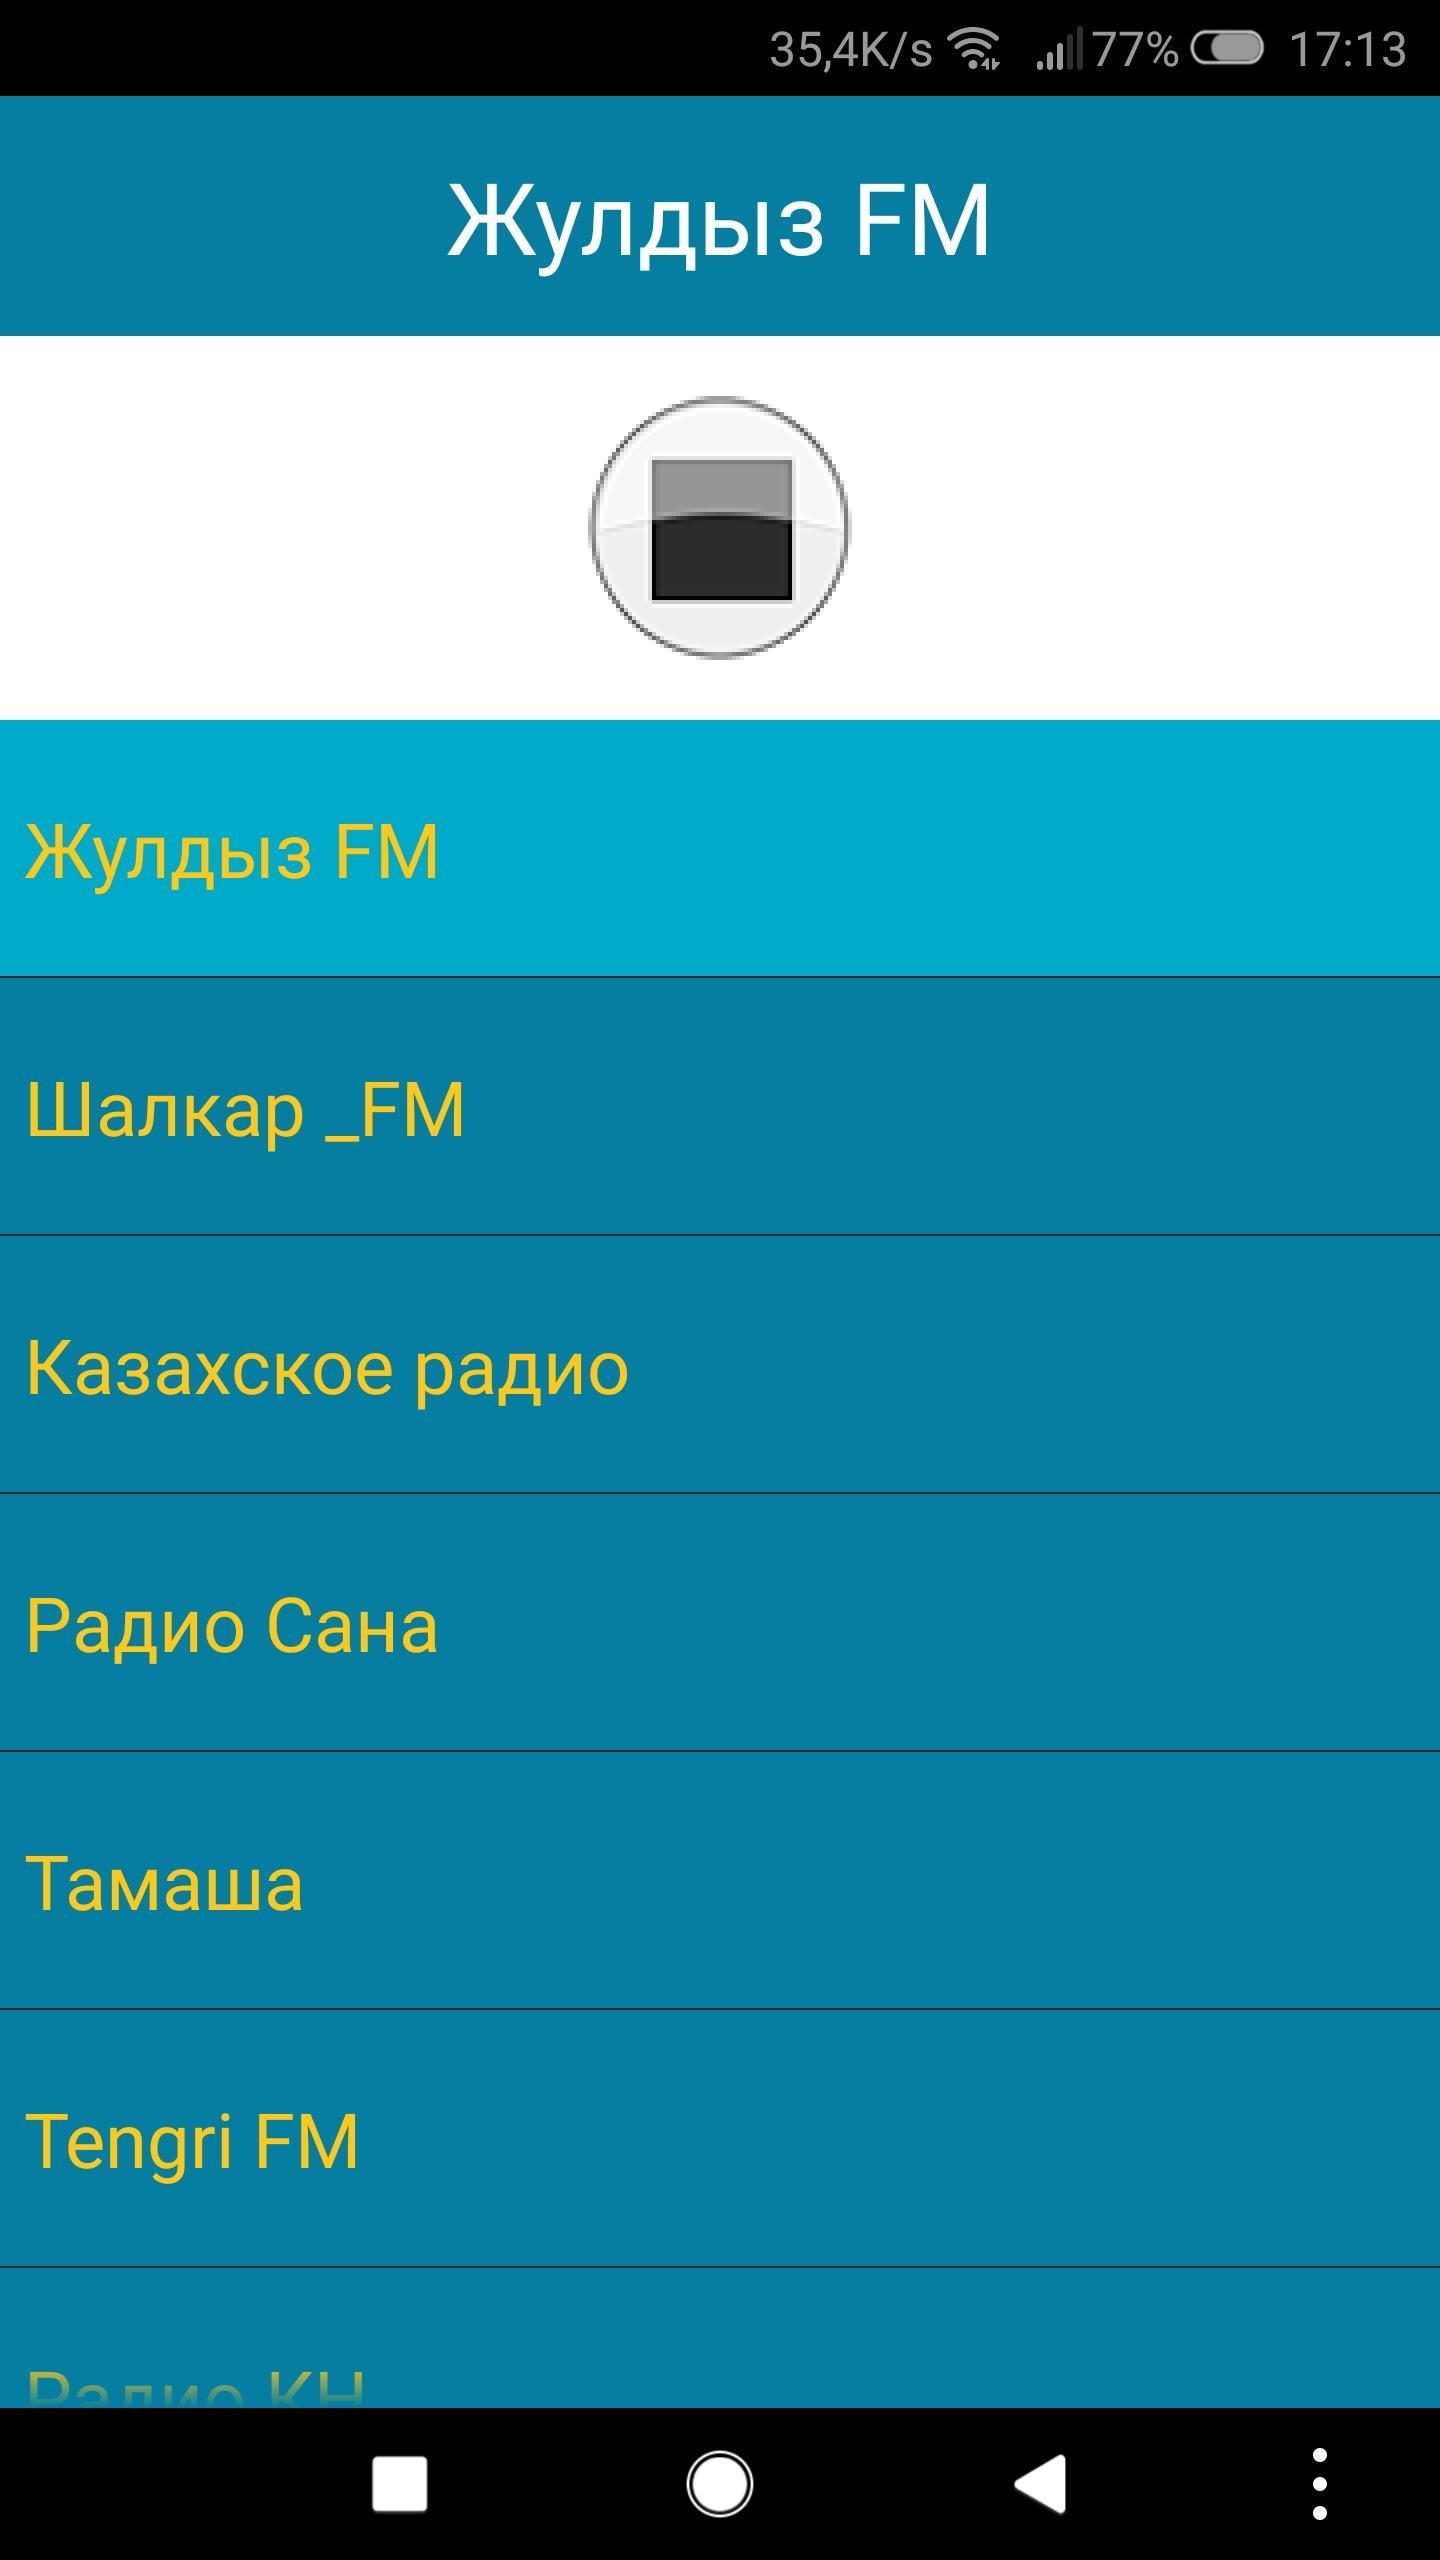 Включи казахстанское радио. Радиостанция Казахстан. Радио Казахстан. Казахстанская радиостанция.